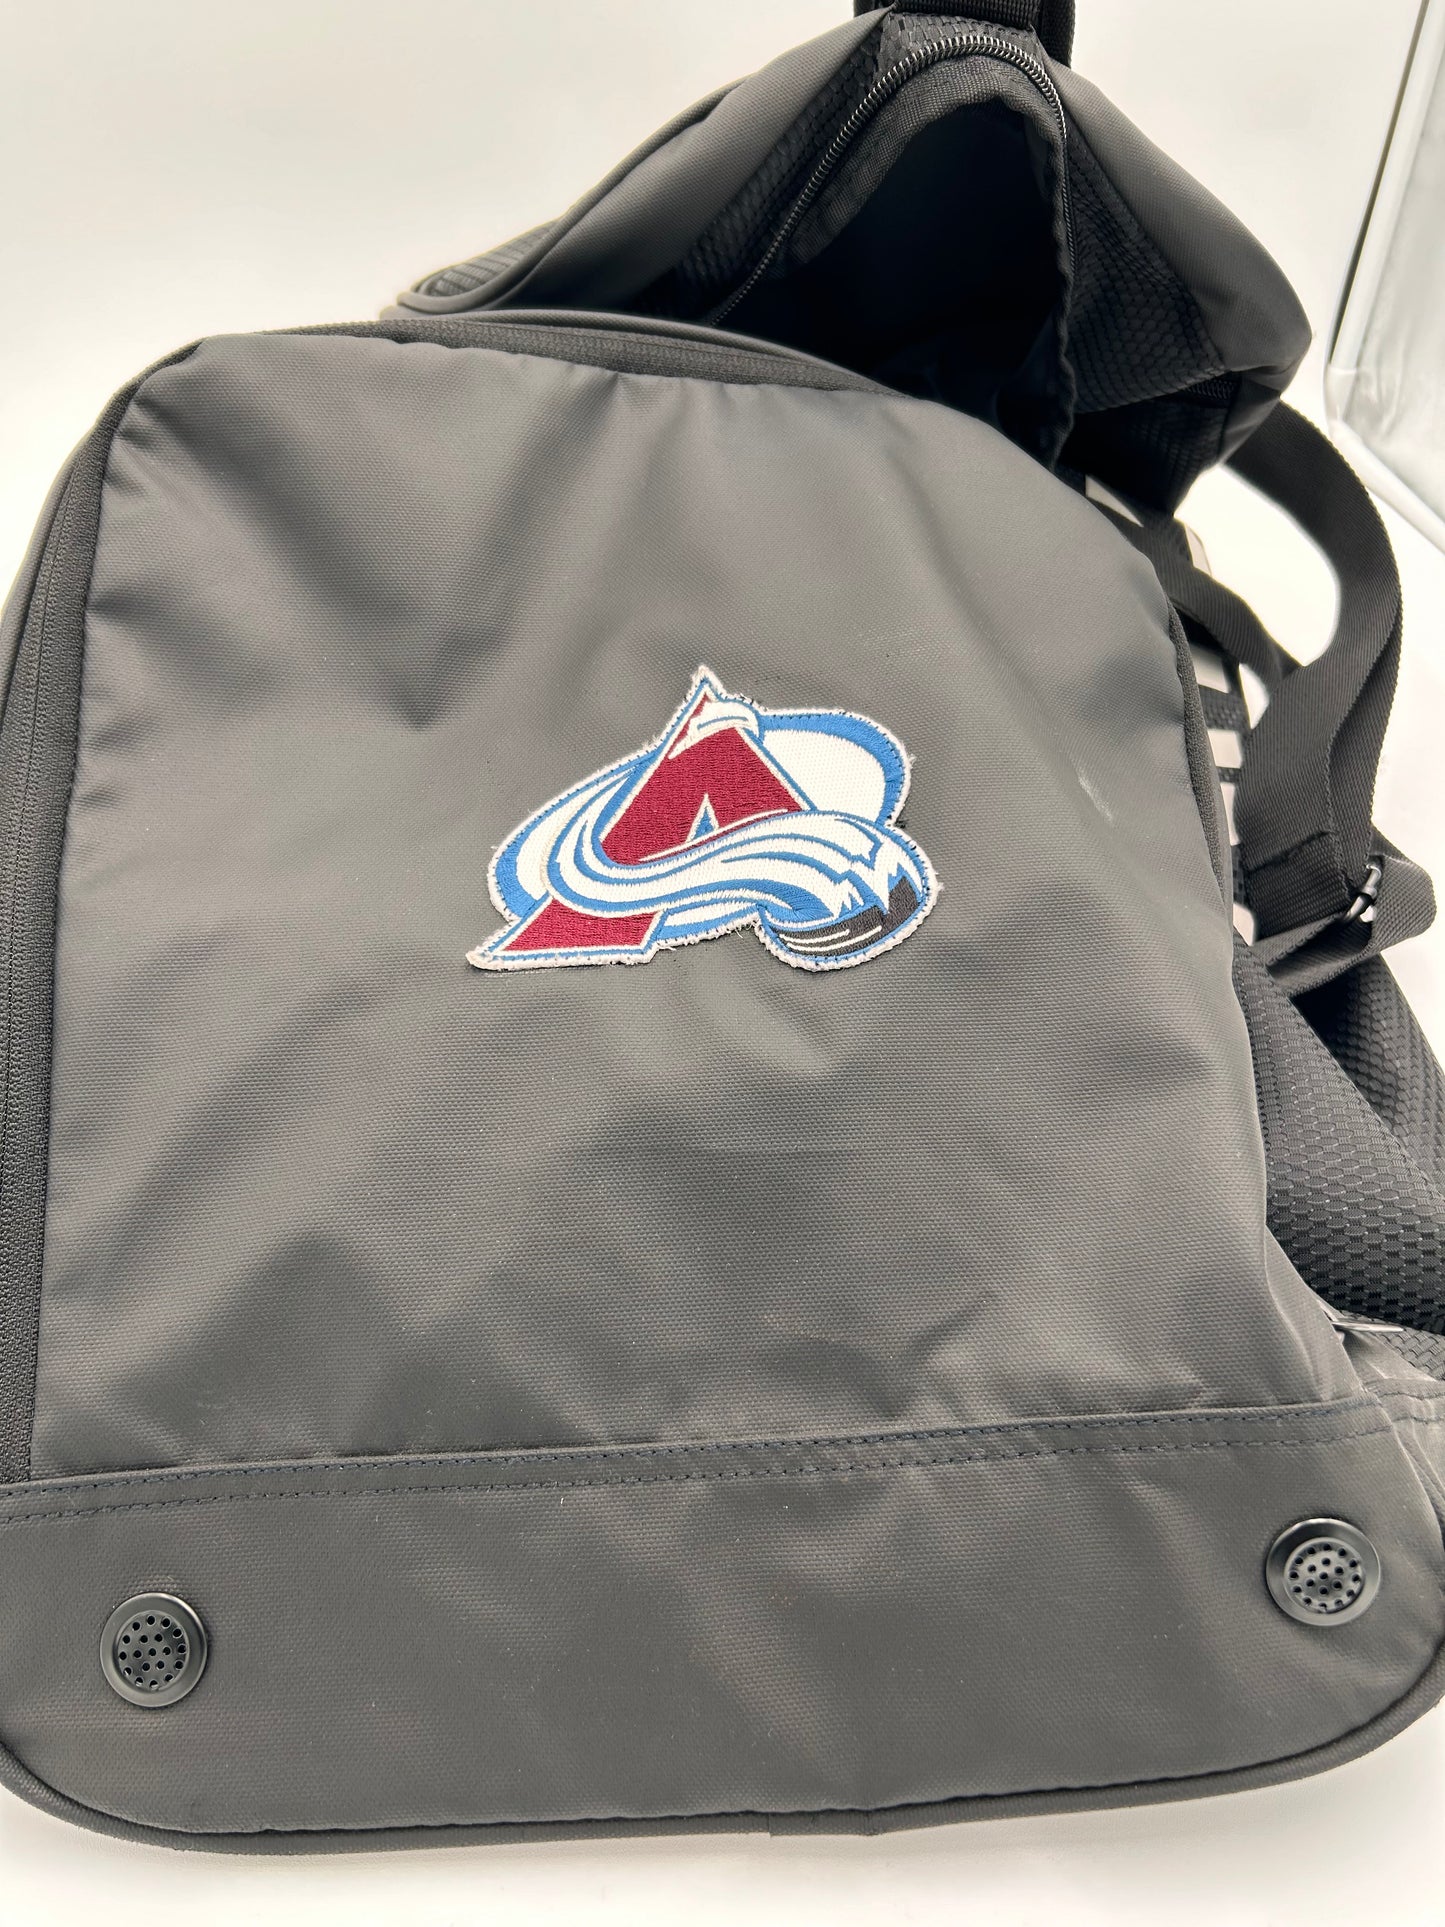 Colorado Avalanche Duffel Bag (Read Description)